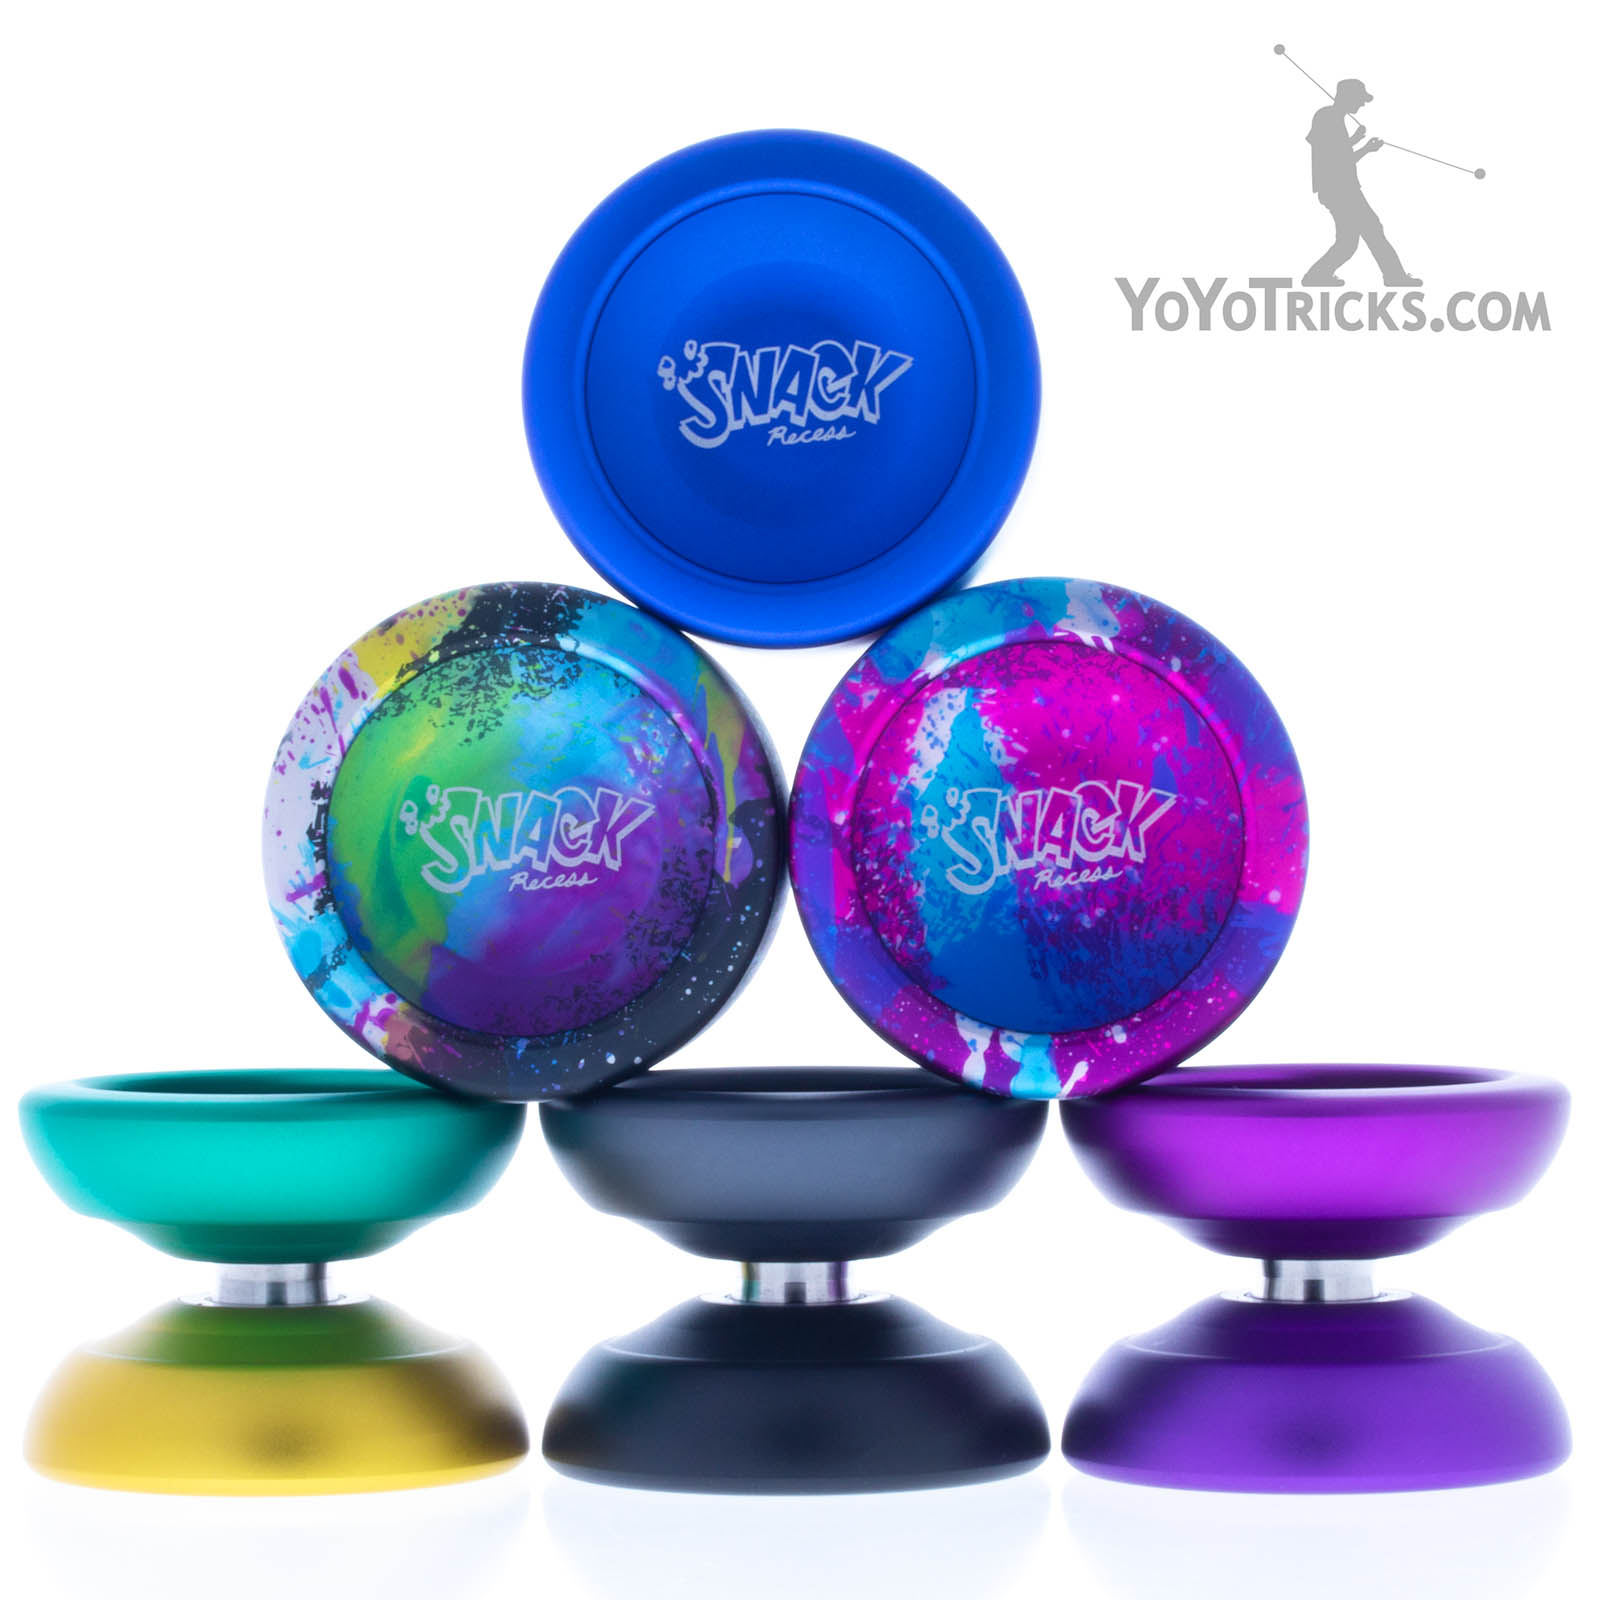 Snack yoyo - Our Favorite Pocket yoyo